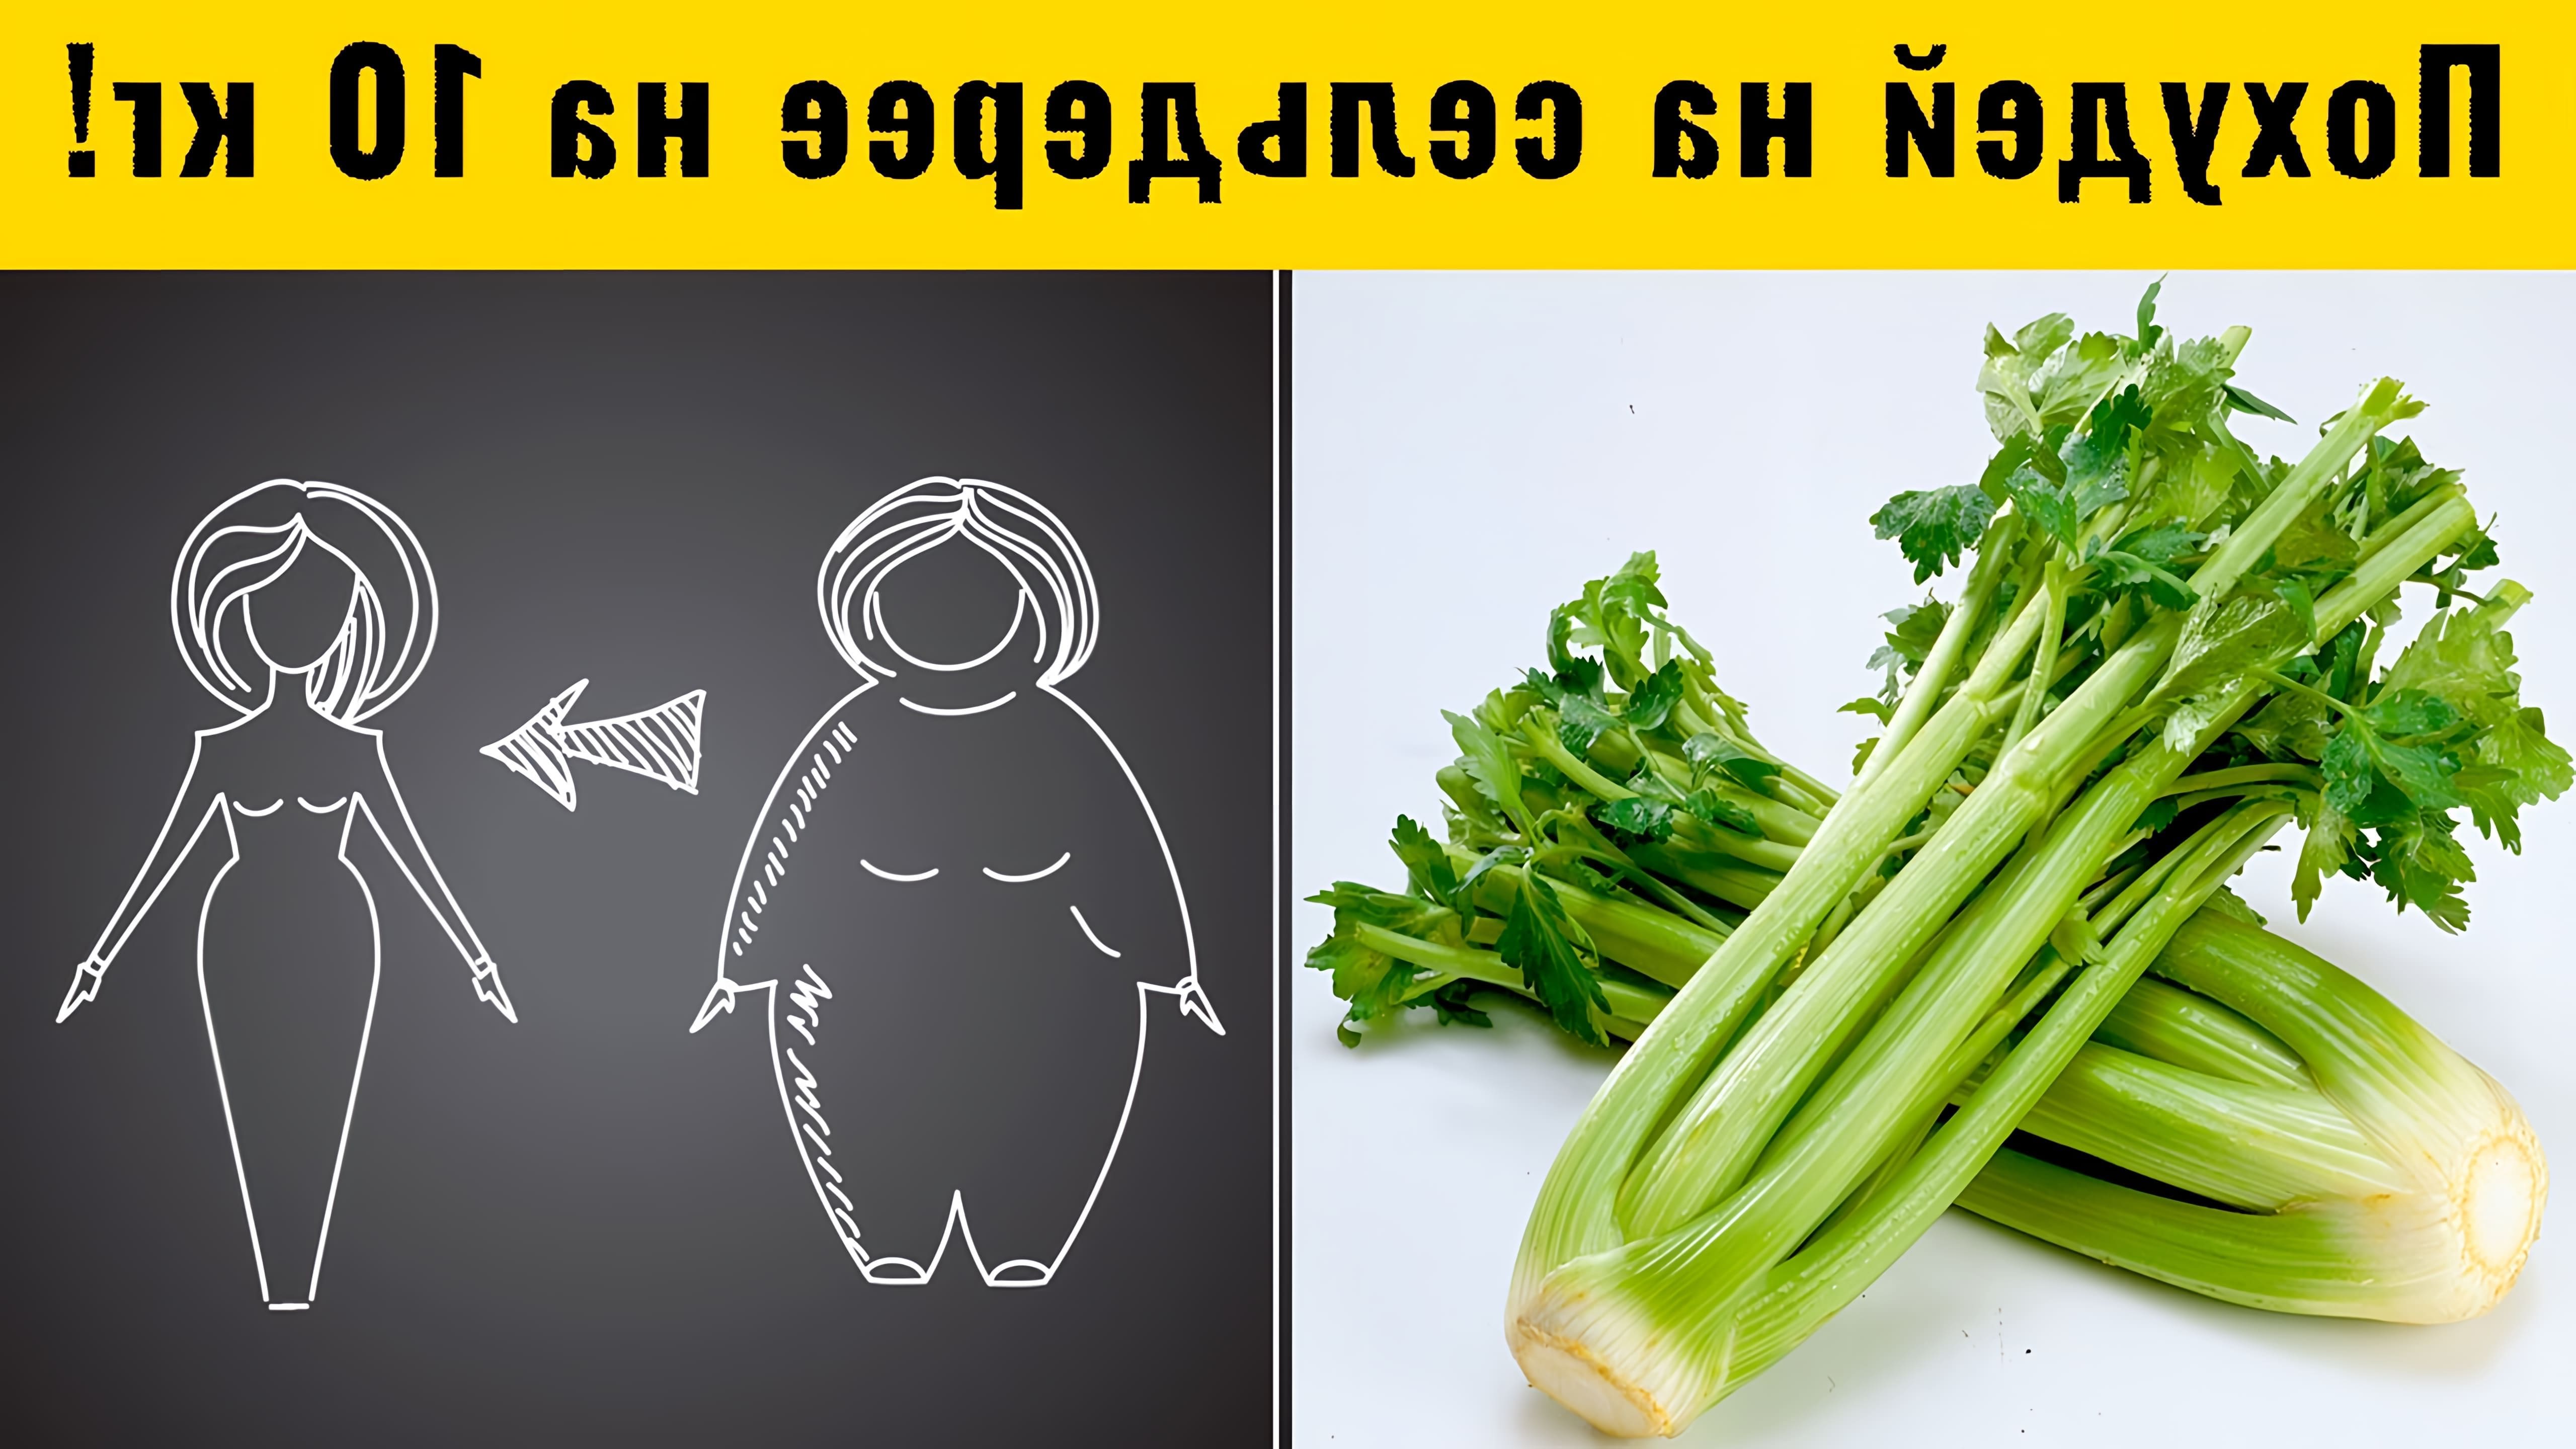 Сельдерей - это не только вкусный и полезный овощ, но и отличный помощник в борьбе с лишним весом